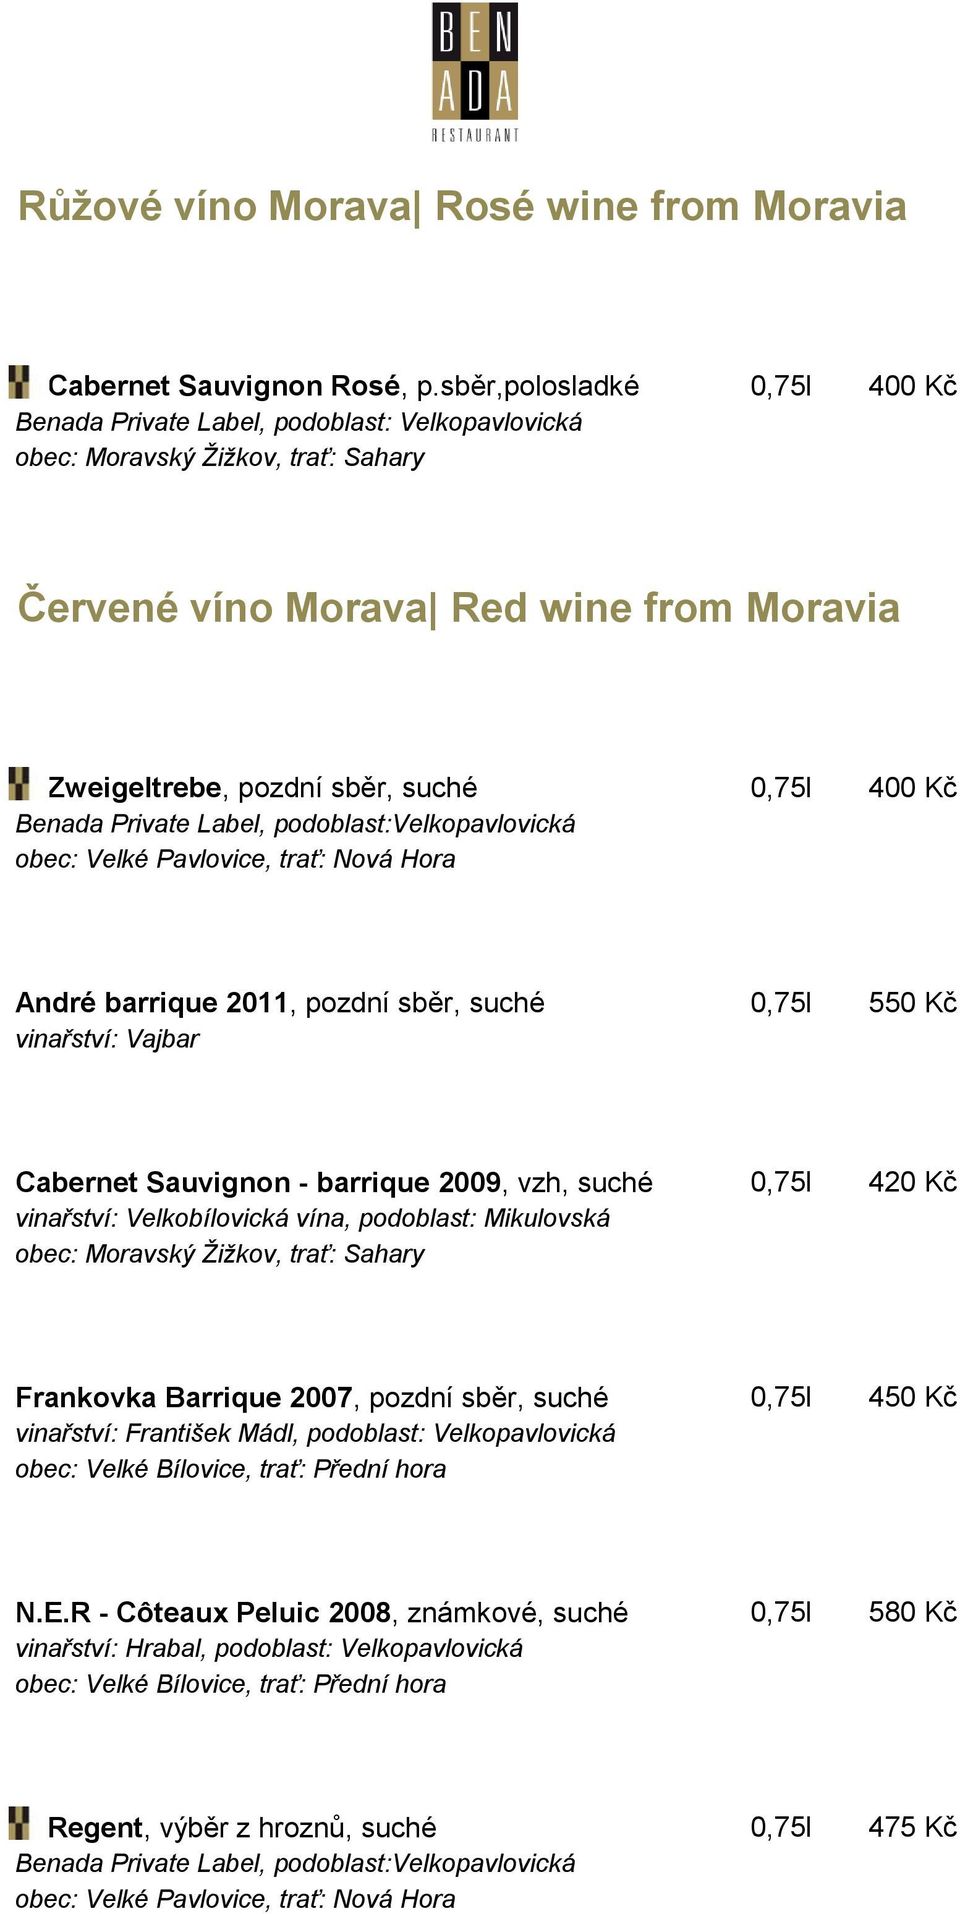 Cabernet Sauvignon - barrique 2009, vzh, suché 0,75l 420 Kč vinařství: Velkobílovická vína, podoblast: Mikulovská Frankovka Barrique 2007, pozdní sběr, suché 0,75l 450 Kč